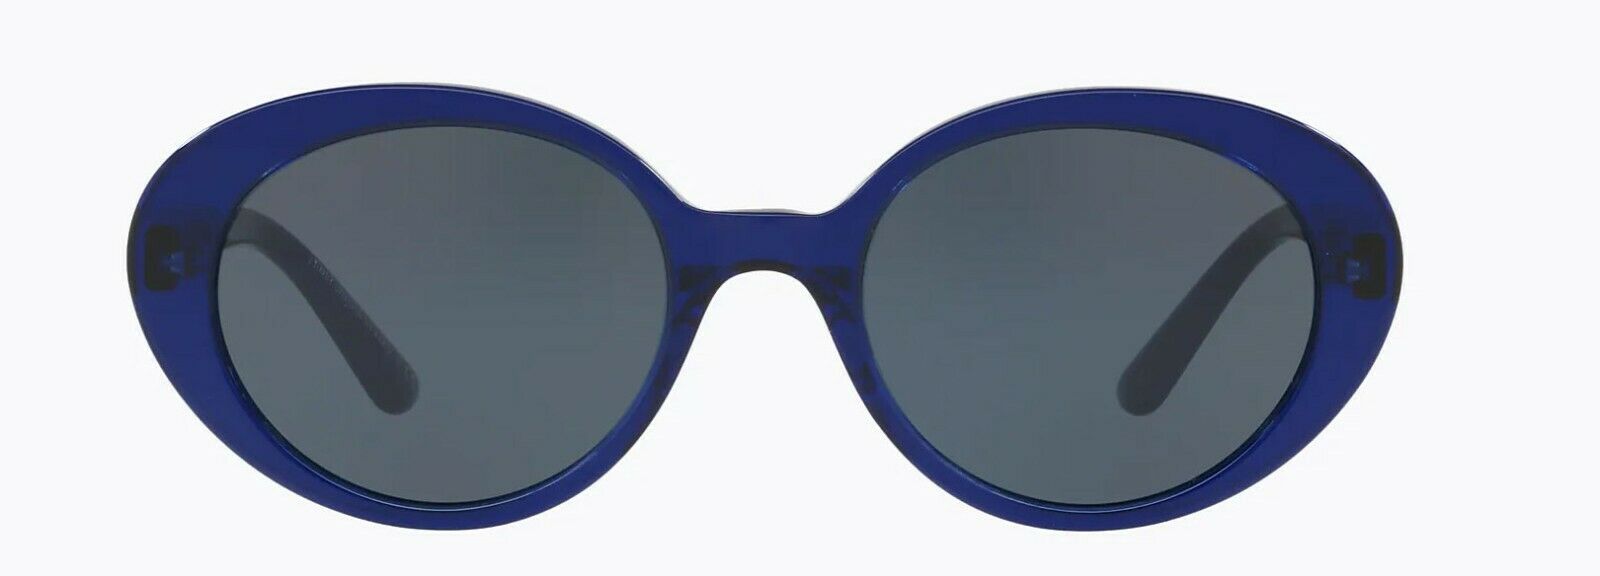 Oliver Peoples Sunglasses 5344SU 1566R5 The Row Parquet Denim Blue / Blue 50mm-827934419865-classypw.com-1